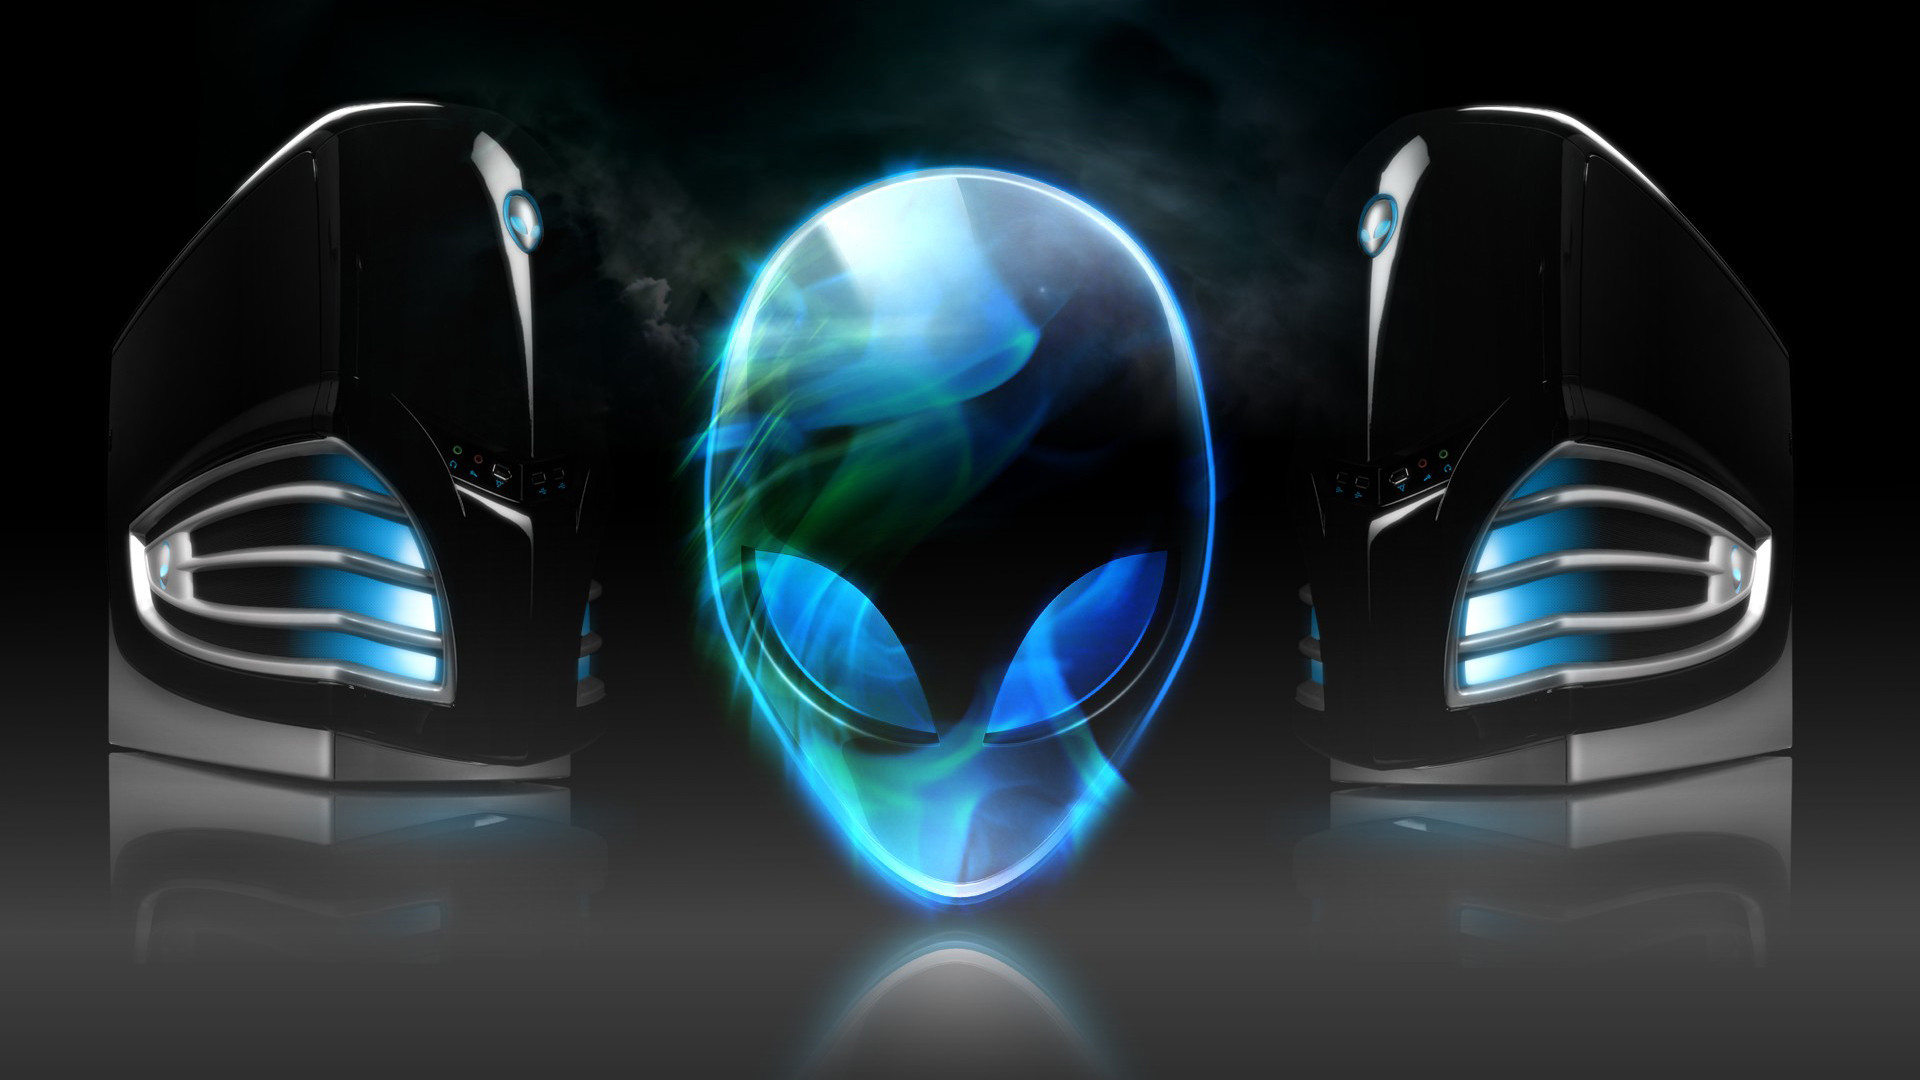 1920x1080 alienware dark blue logo background